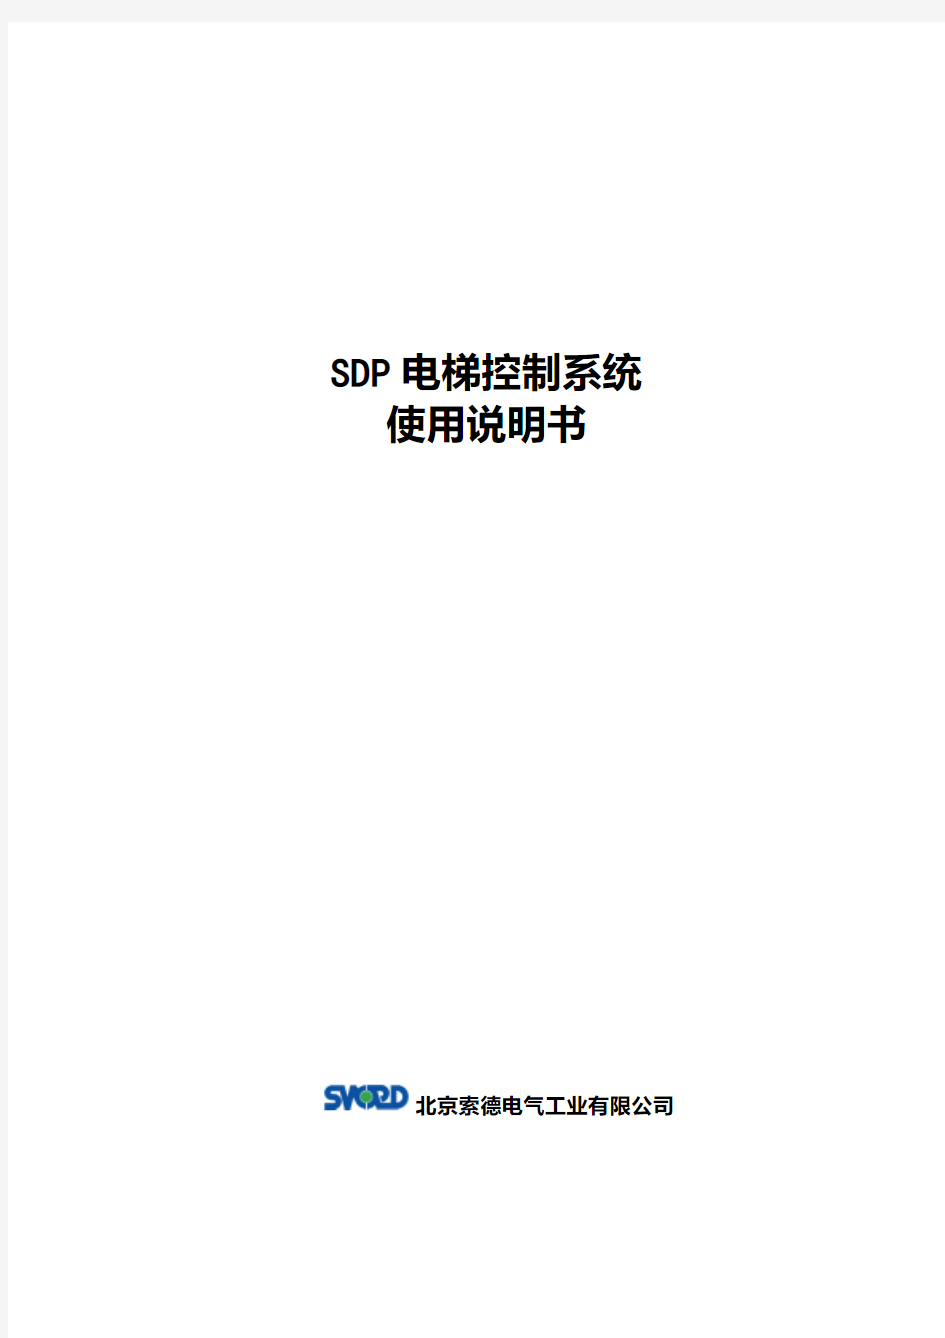 SDP电梯控制系统使用说明书